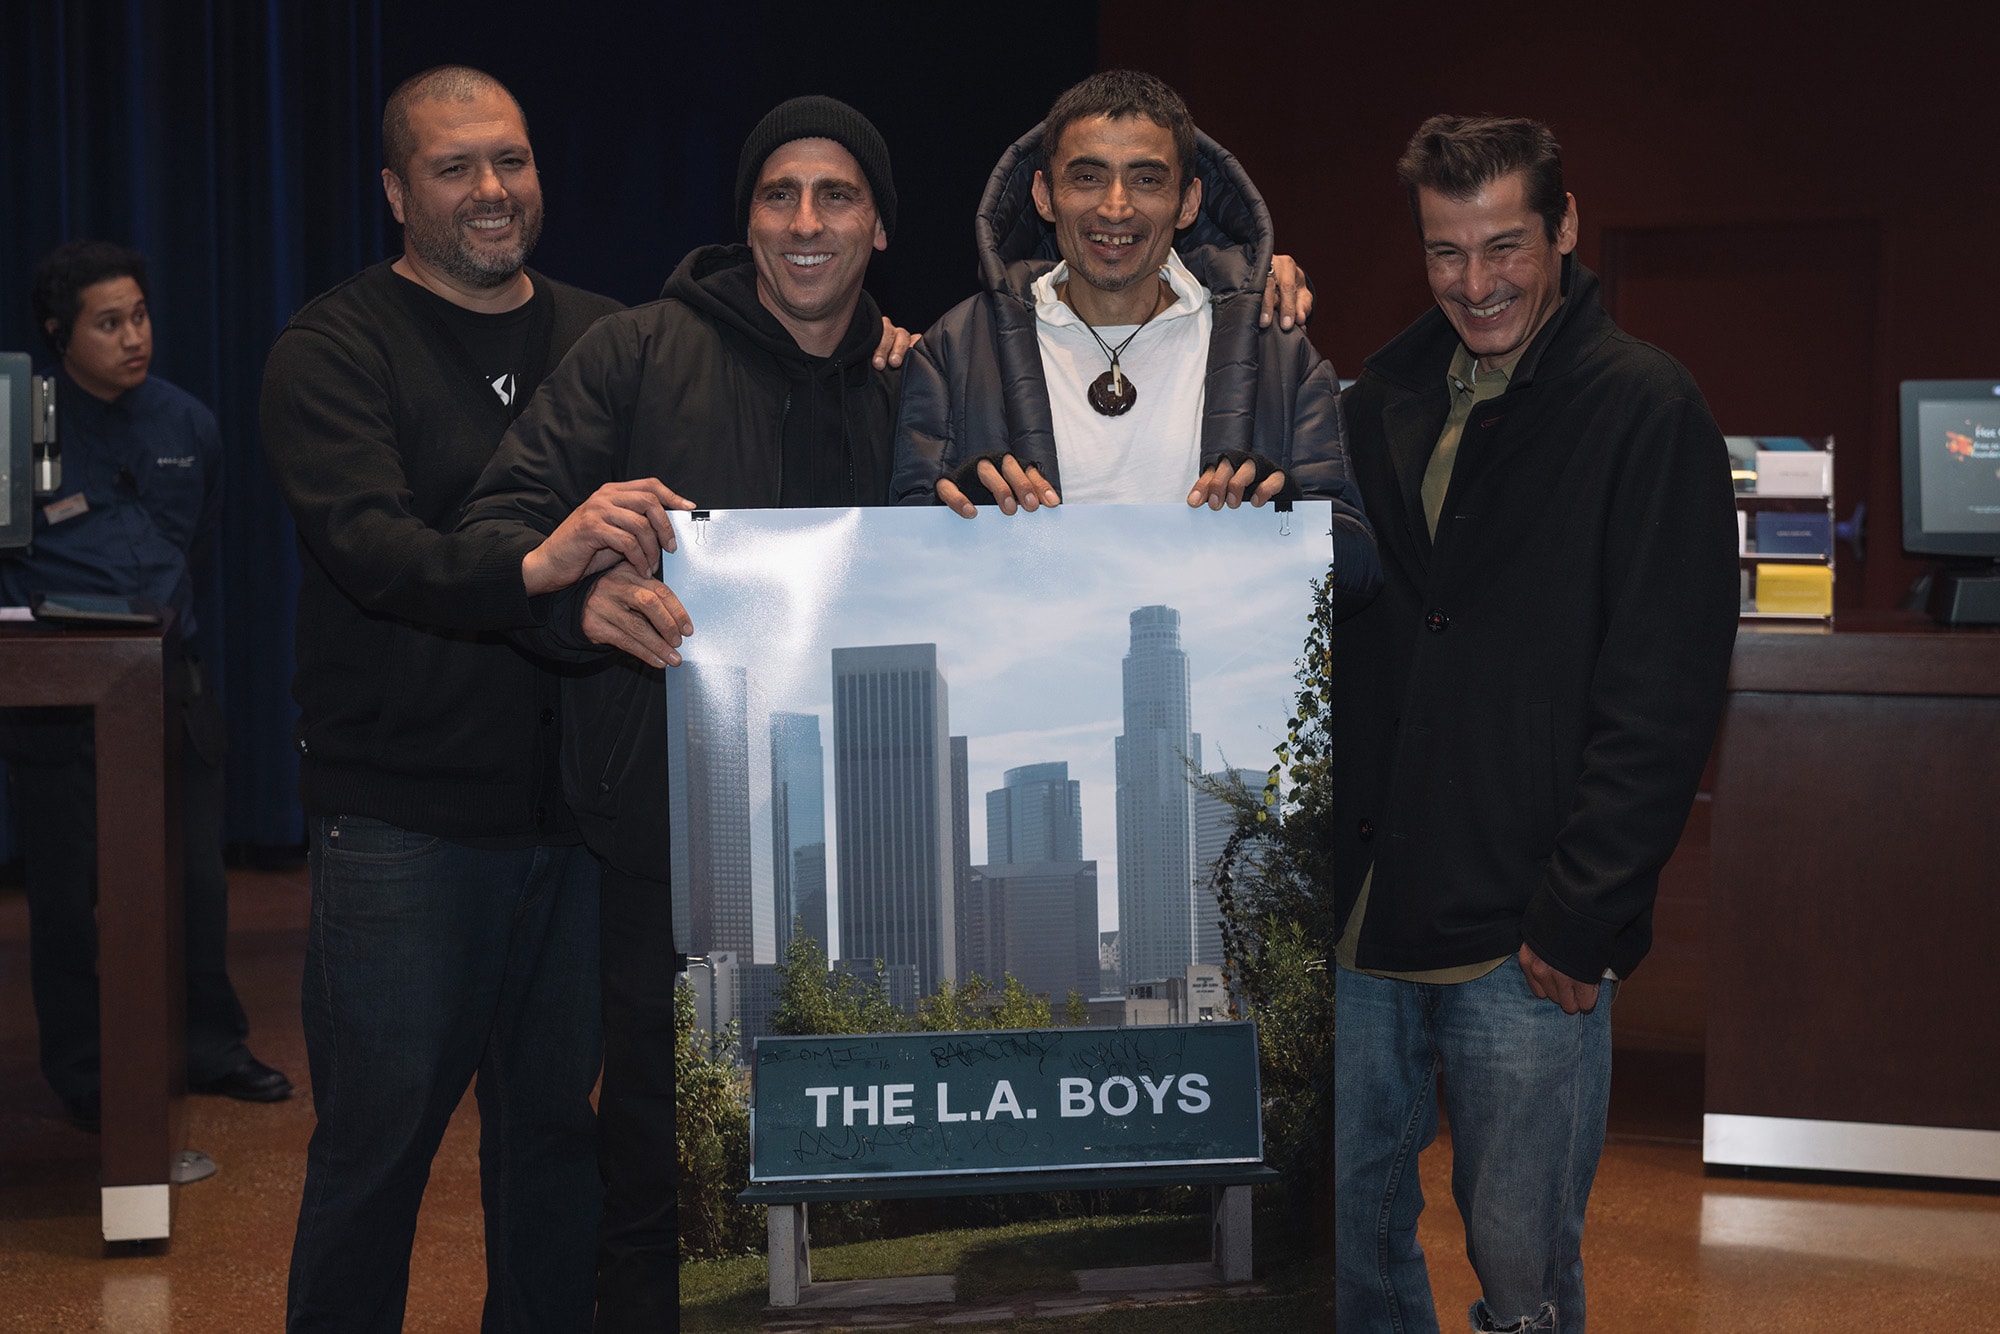 THE L.A. BOYS PREMIERE RECAP -- At ArcLight Santa Monica